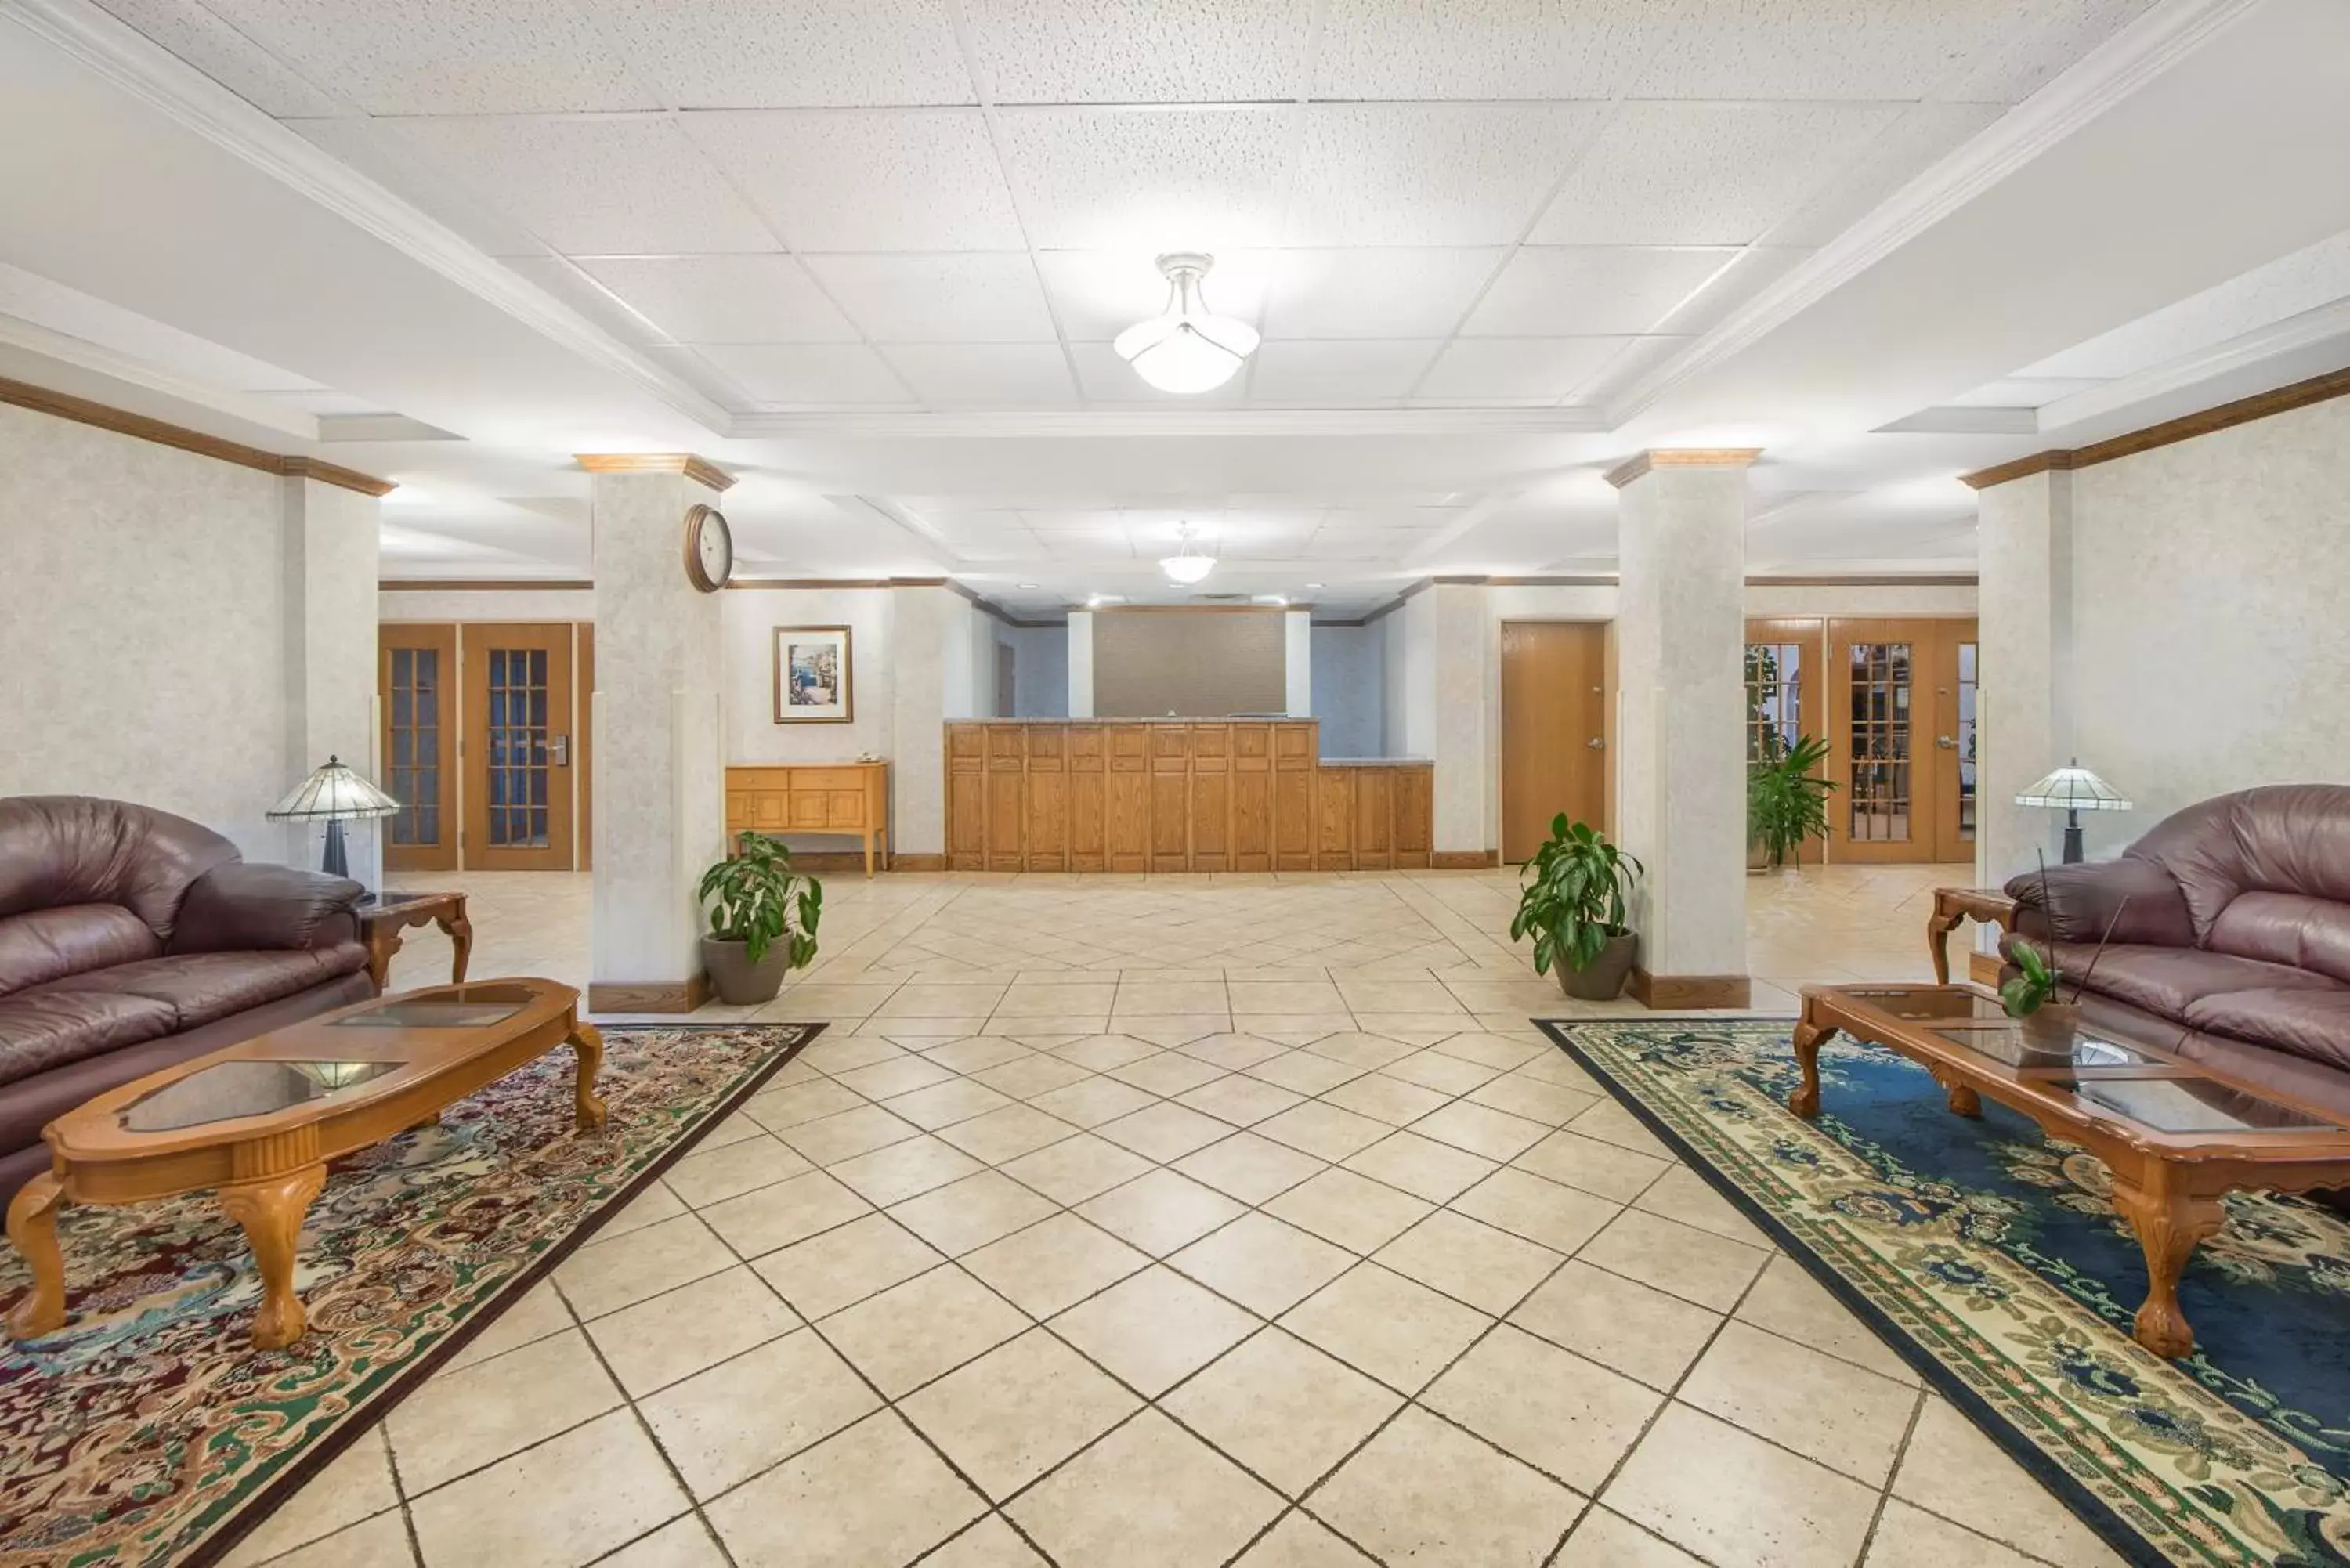 Lobby or reception, Lobby/Reception in Days Inn & Suites by Wyndham Dumas